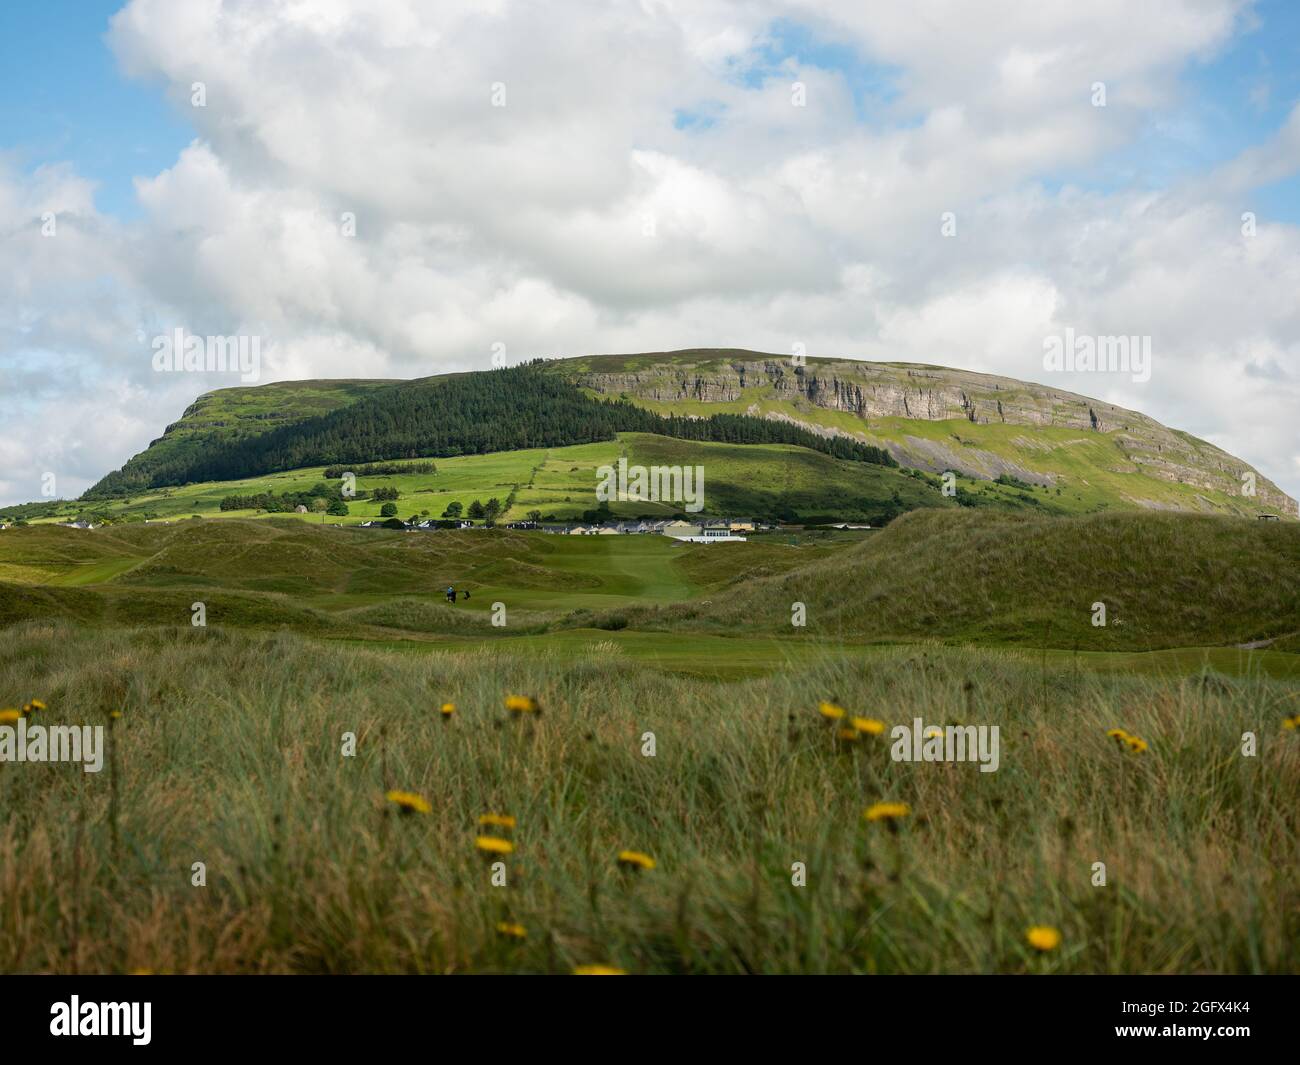 Campo de golf Strandhill con la montaña Knockarea en el fondo. Standhill, Condado de Sligo, Irlanda. Foto de stock